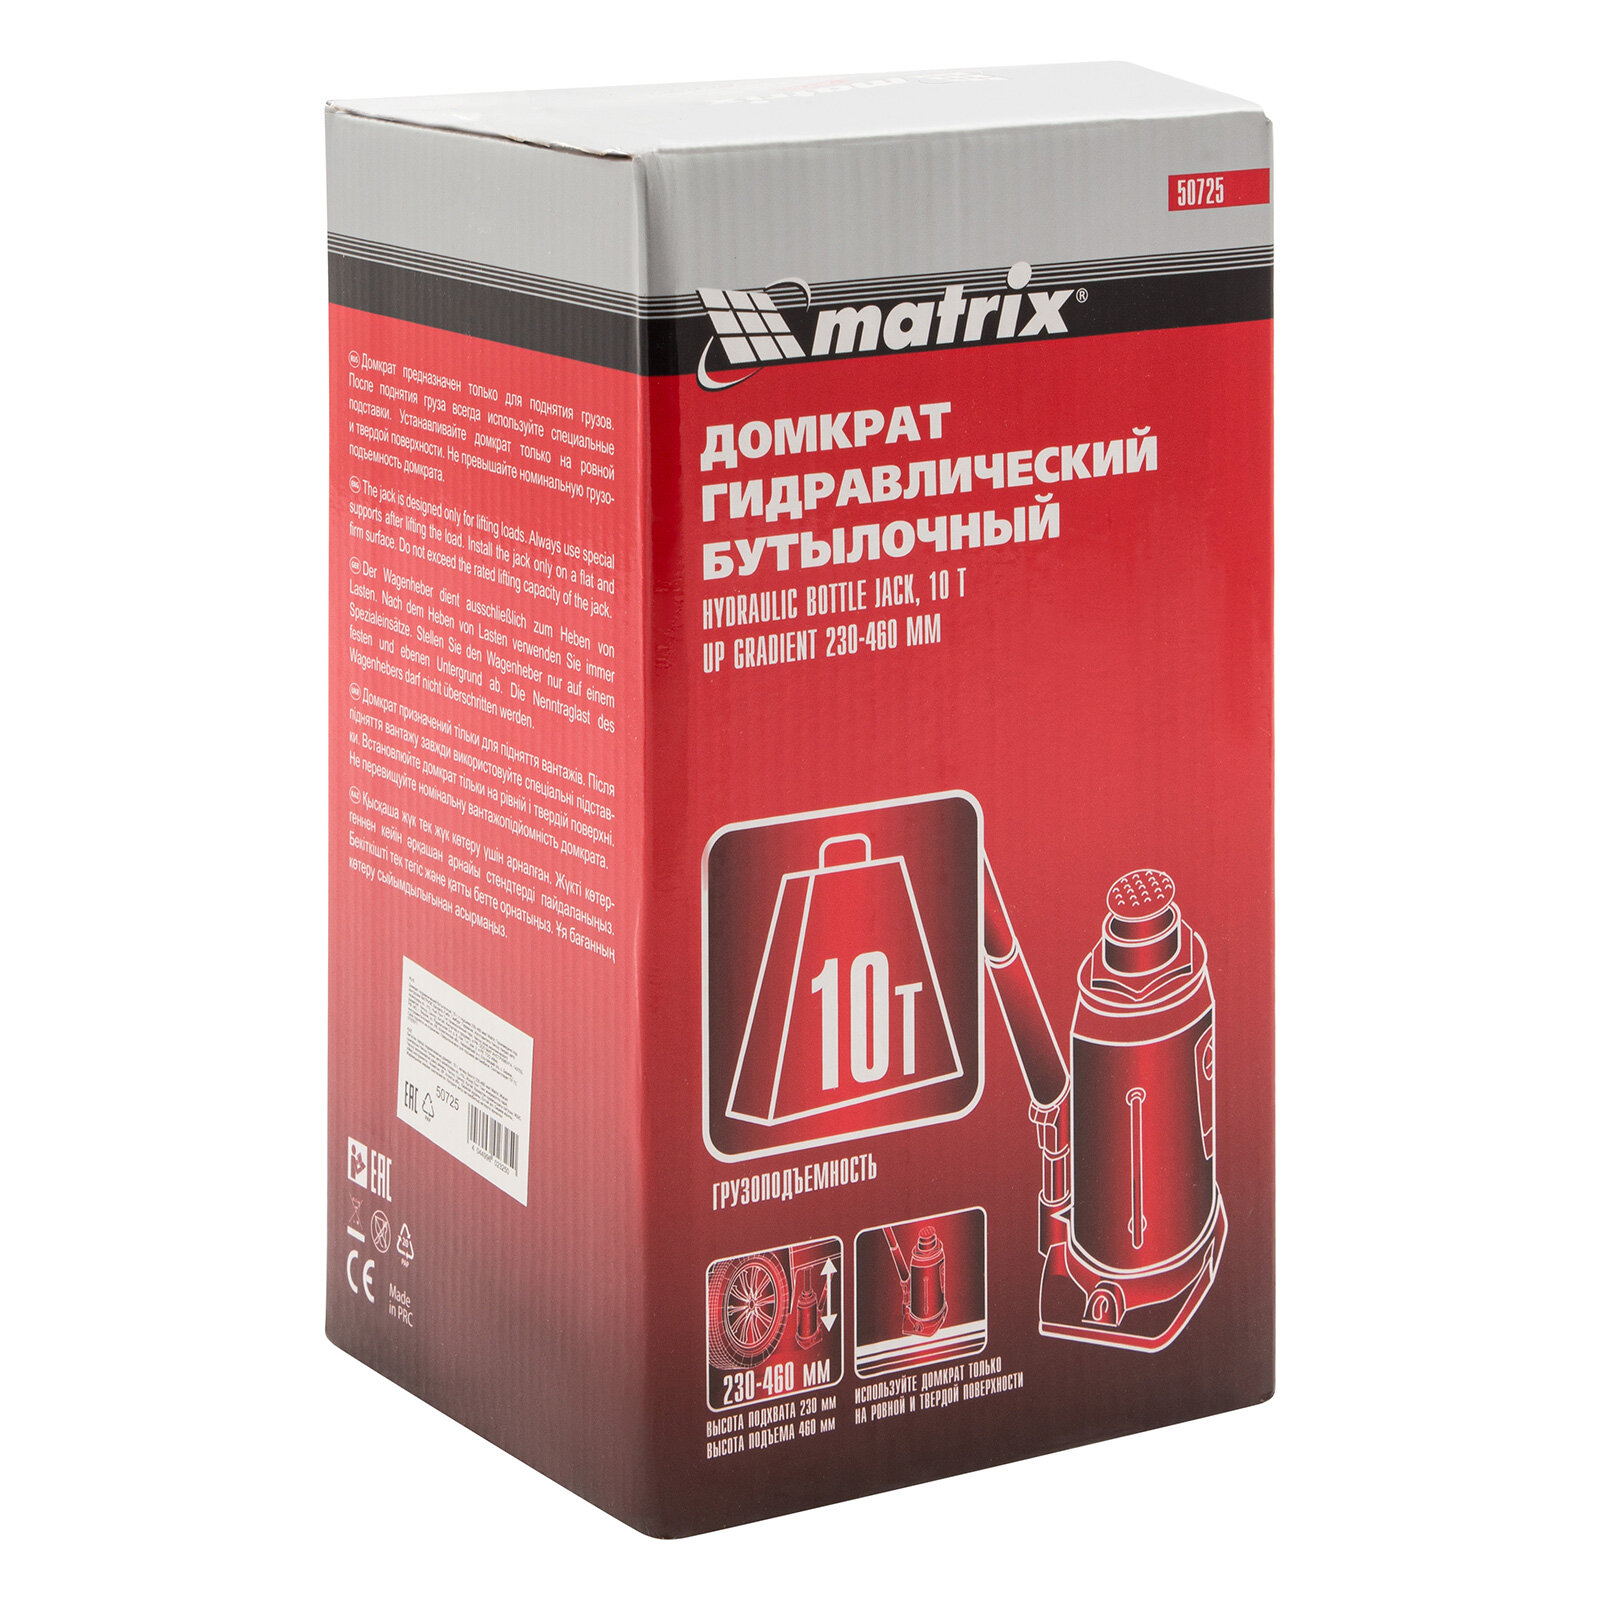 Домкрат бутылочный гидравлический matrix 50725 (10 т) стальной